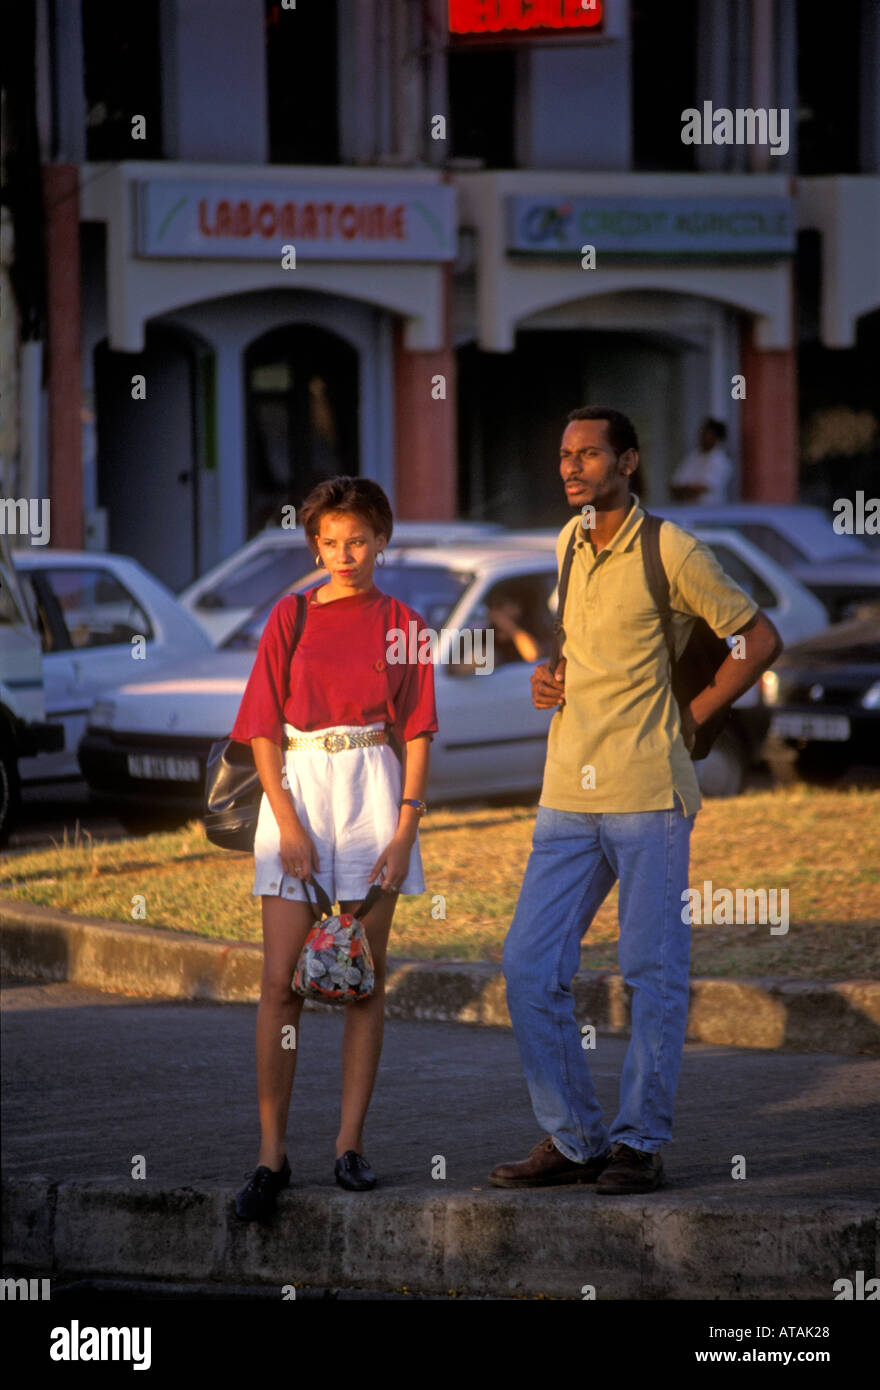 Martiniquais gens personne jeune homme et femme couple debout sur coin de rue Fort-de-France Martinique Antilles Françaises Banque D'Images